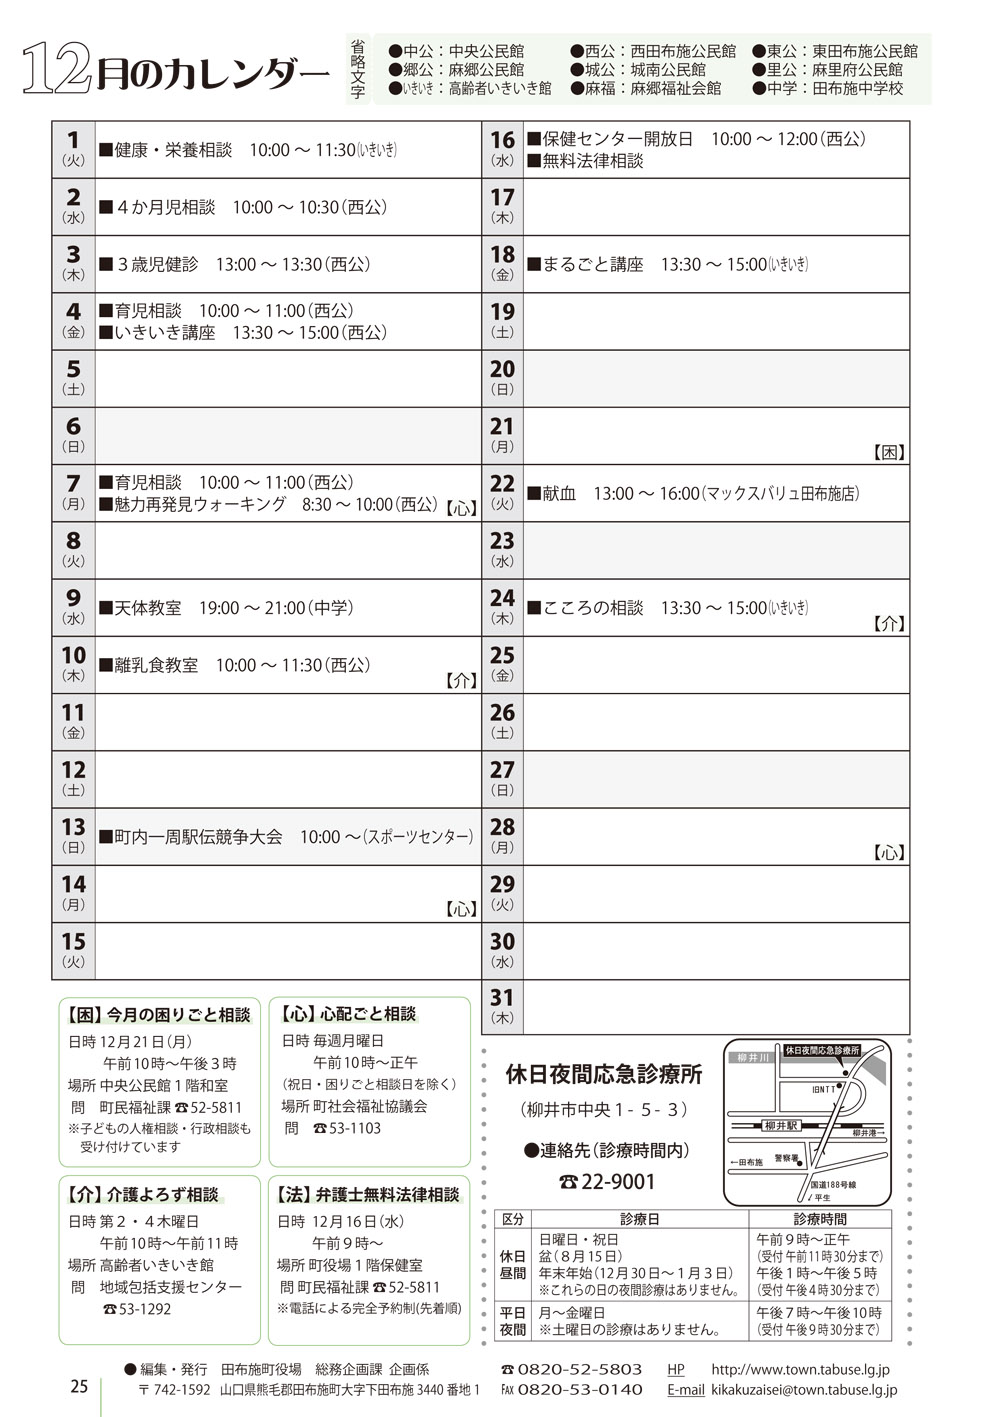 行事カレンダー 15年12月 田布施町